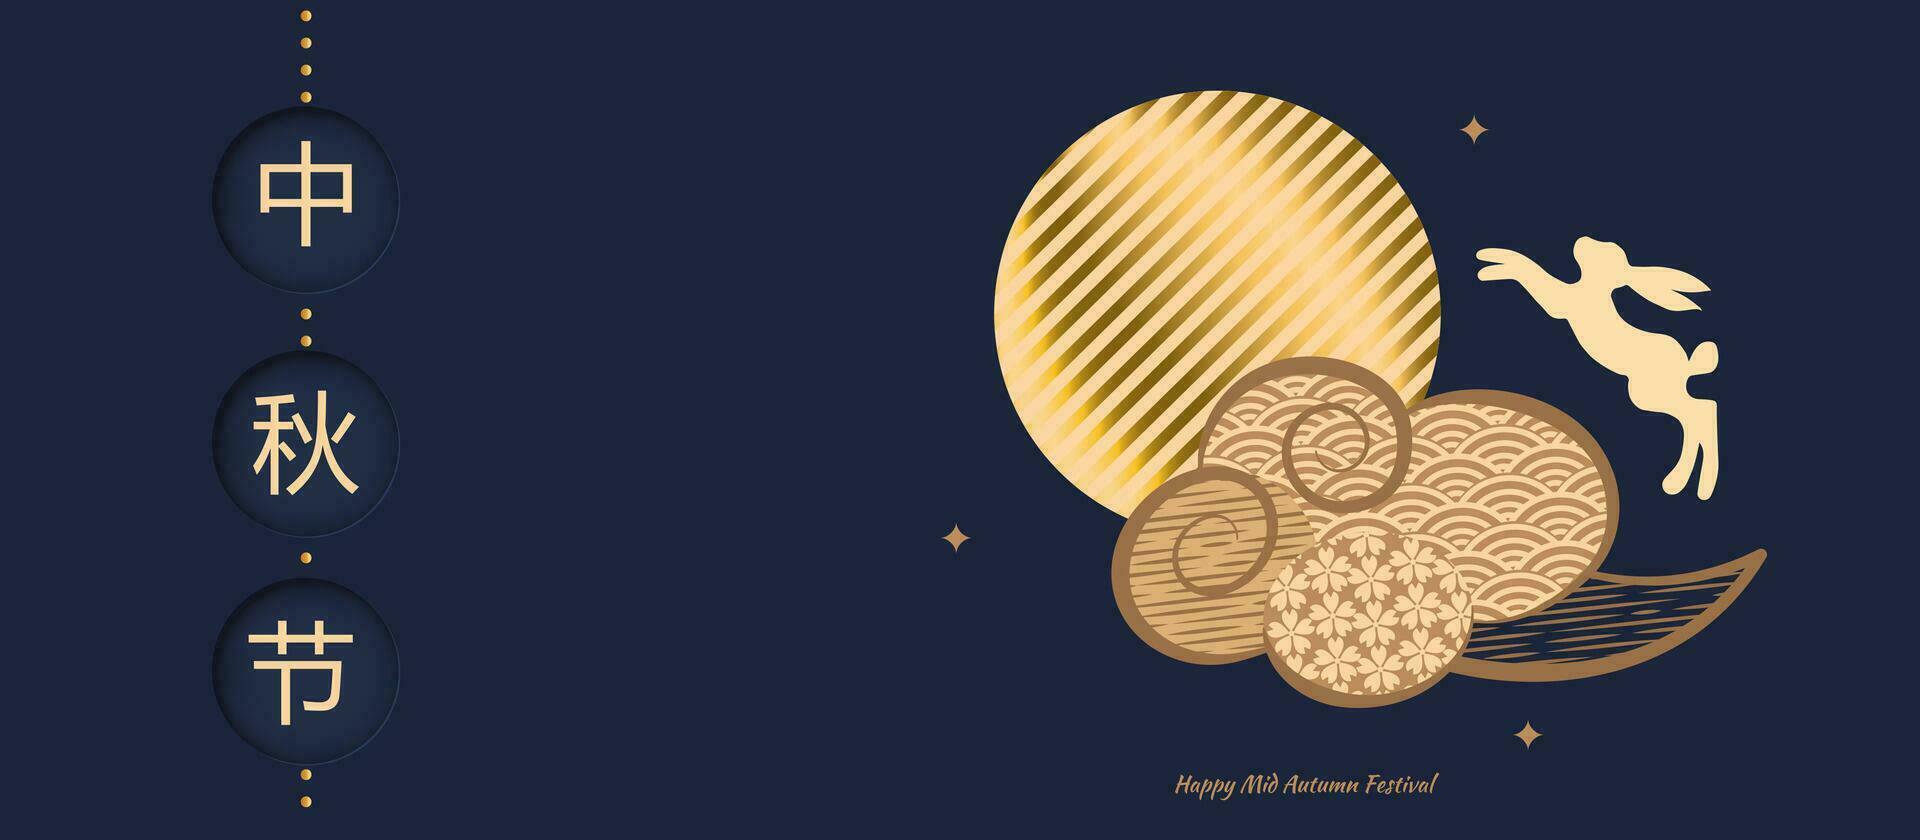 bannière conception avec traditionnel chinois plein lune cercles, sauter lièvre en dessous de le lune. stylisé nuage. Traduction de chinois - milieu de l'automne festival. vecteur illustration